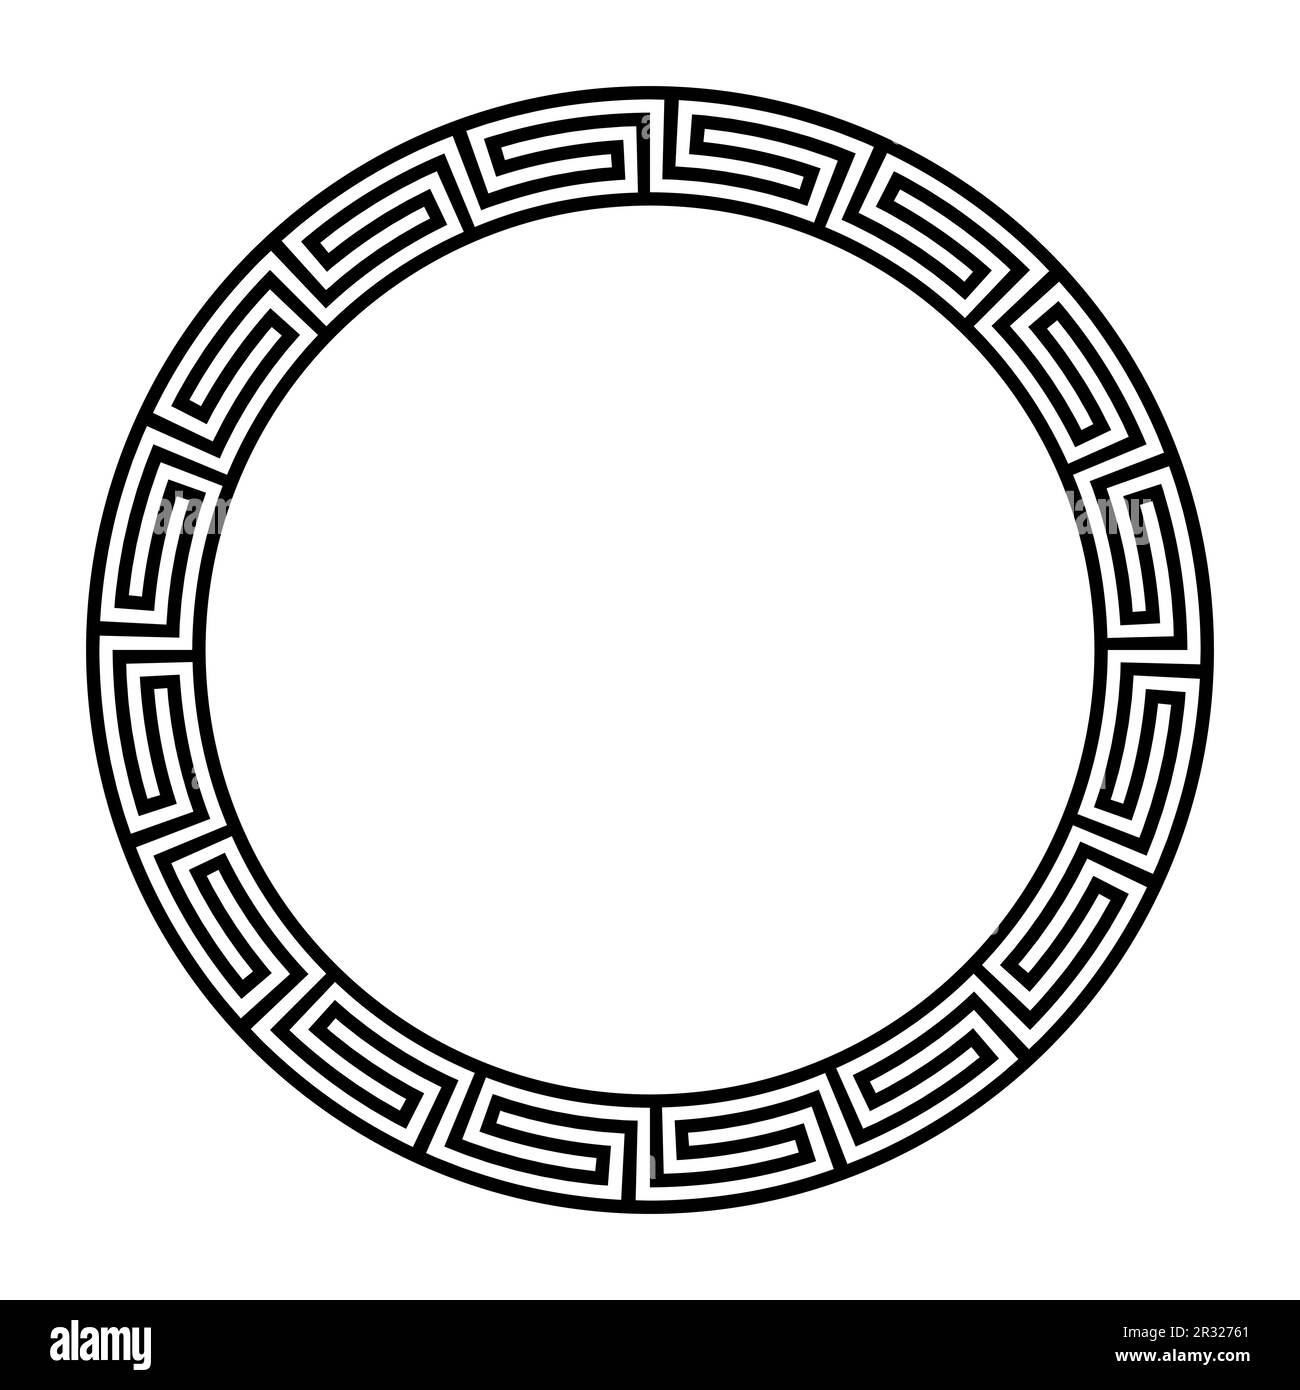 Décoration fret grec, cadre circulaire avec motif méandre sans couture. Une bordure circulaire décorative, construite à partir de lignes continues. Banque D'Images